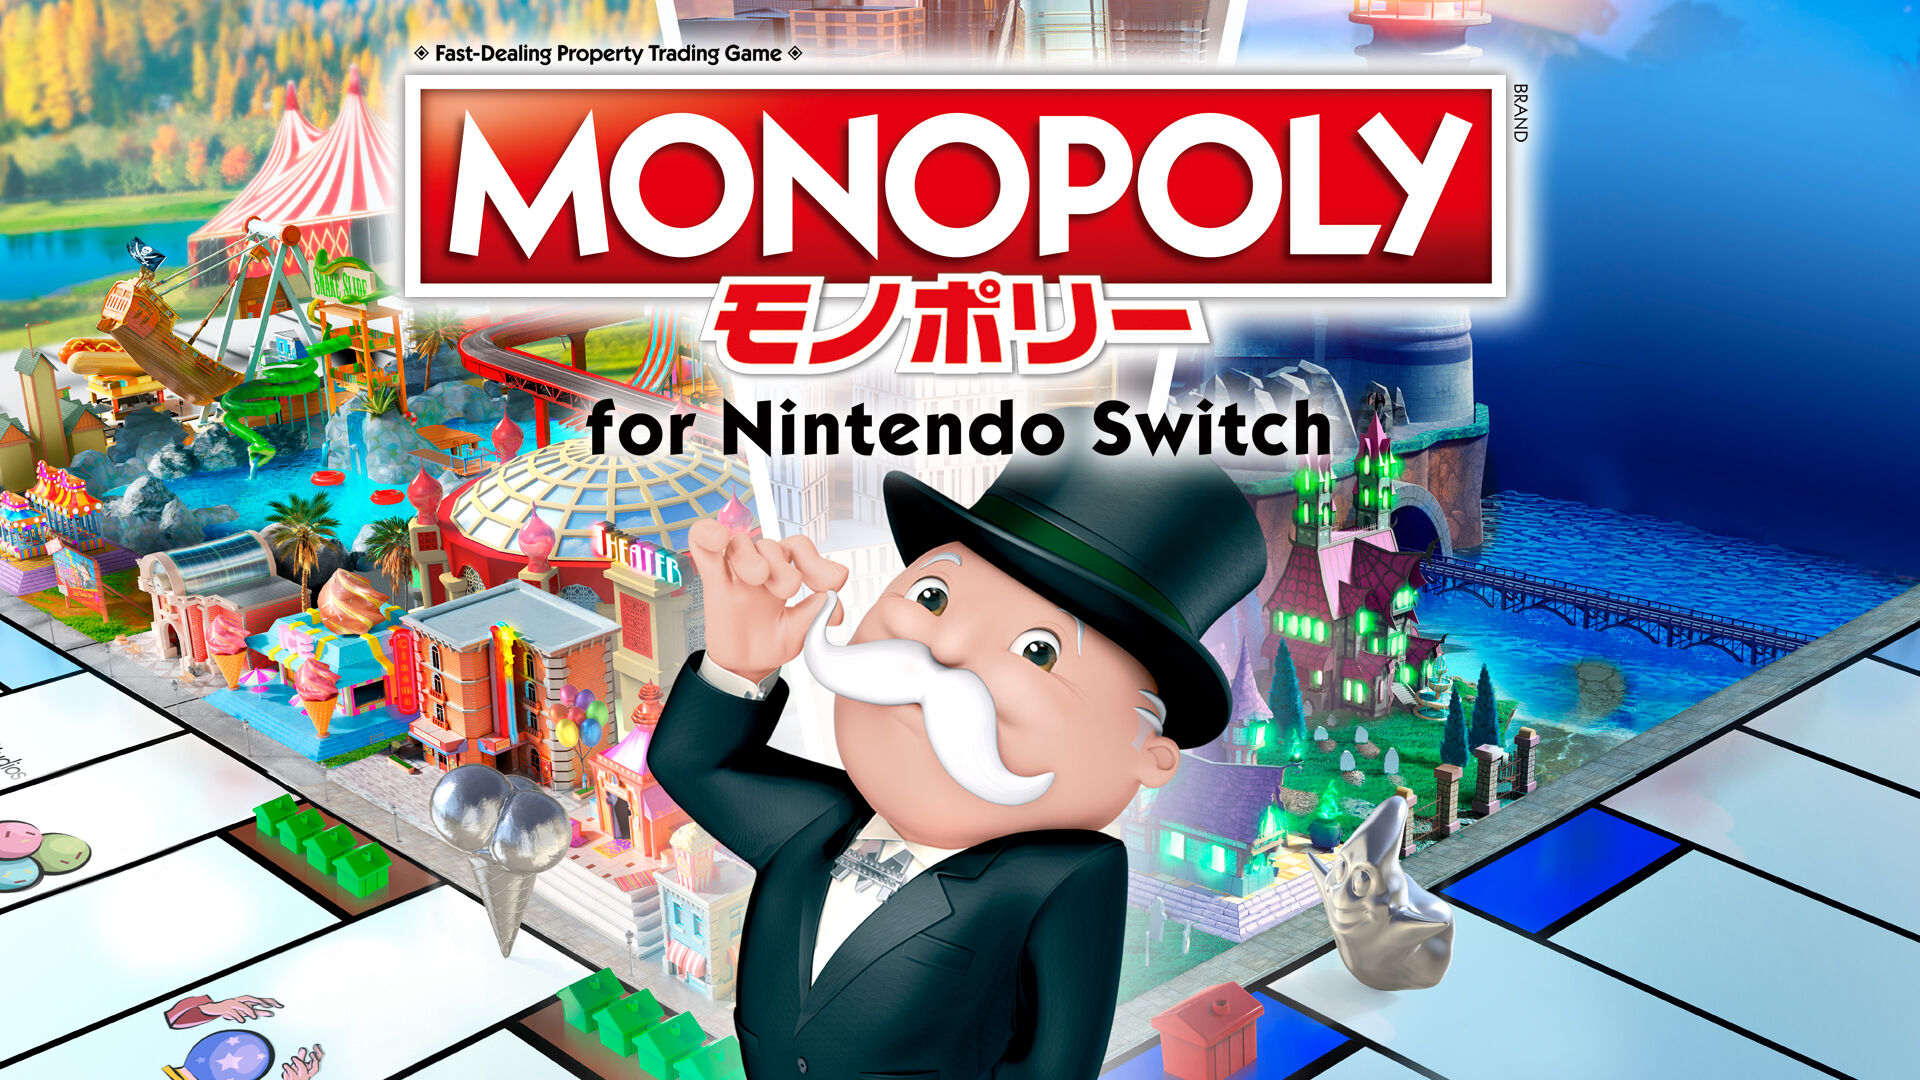 ボードゲーム モノポリー Nintendo Monopoly Gameエンタメ/ホビー